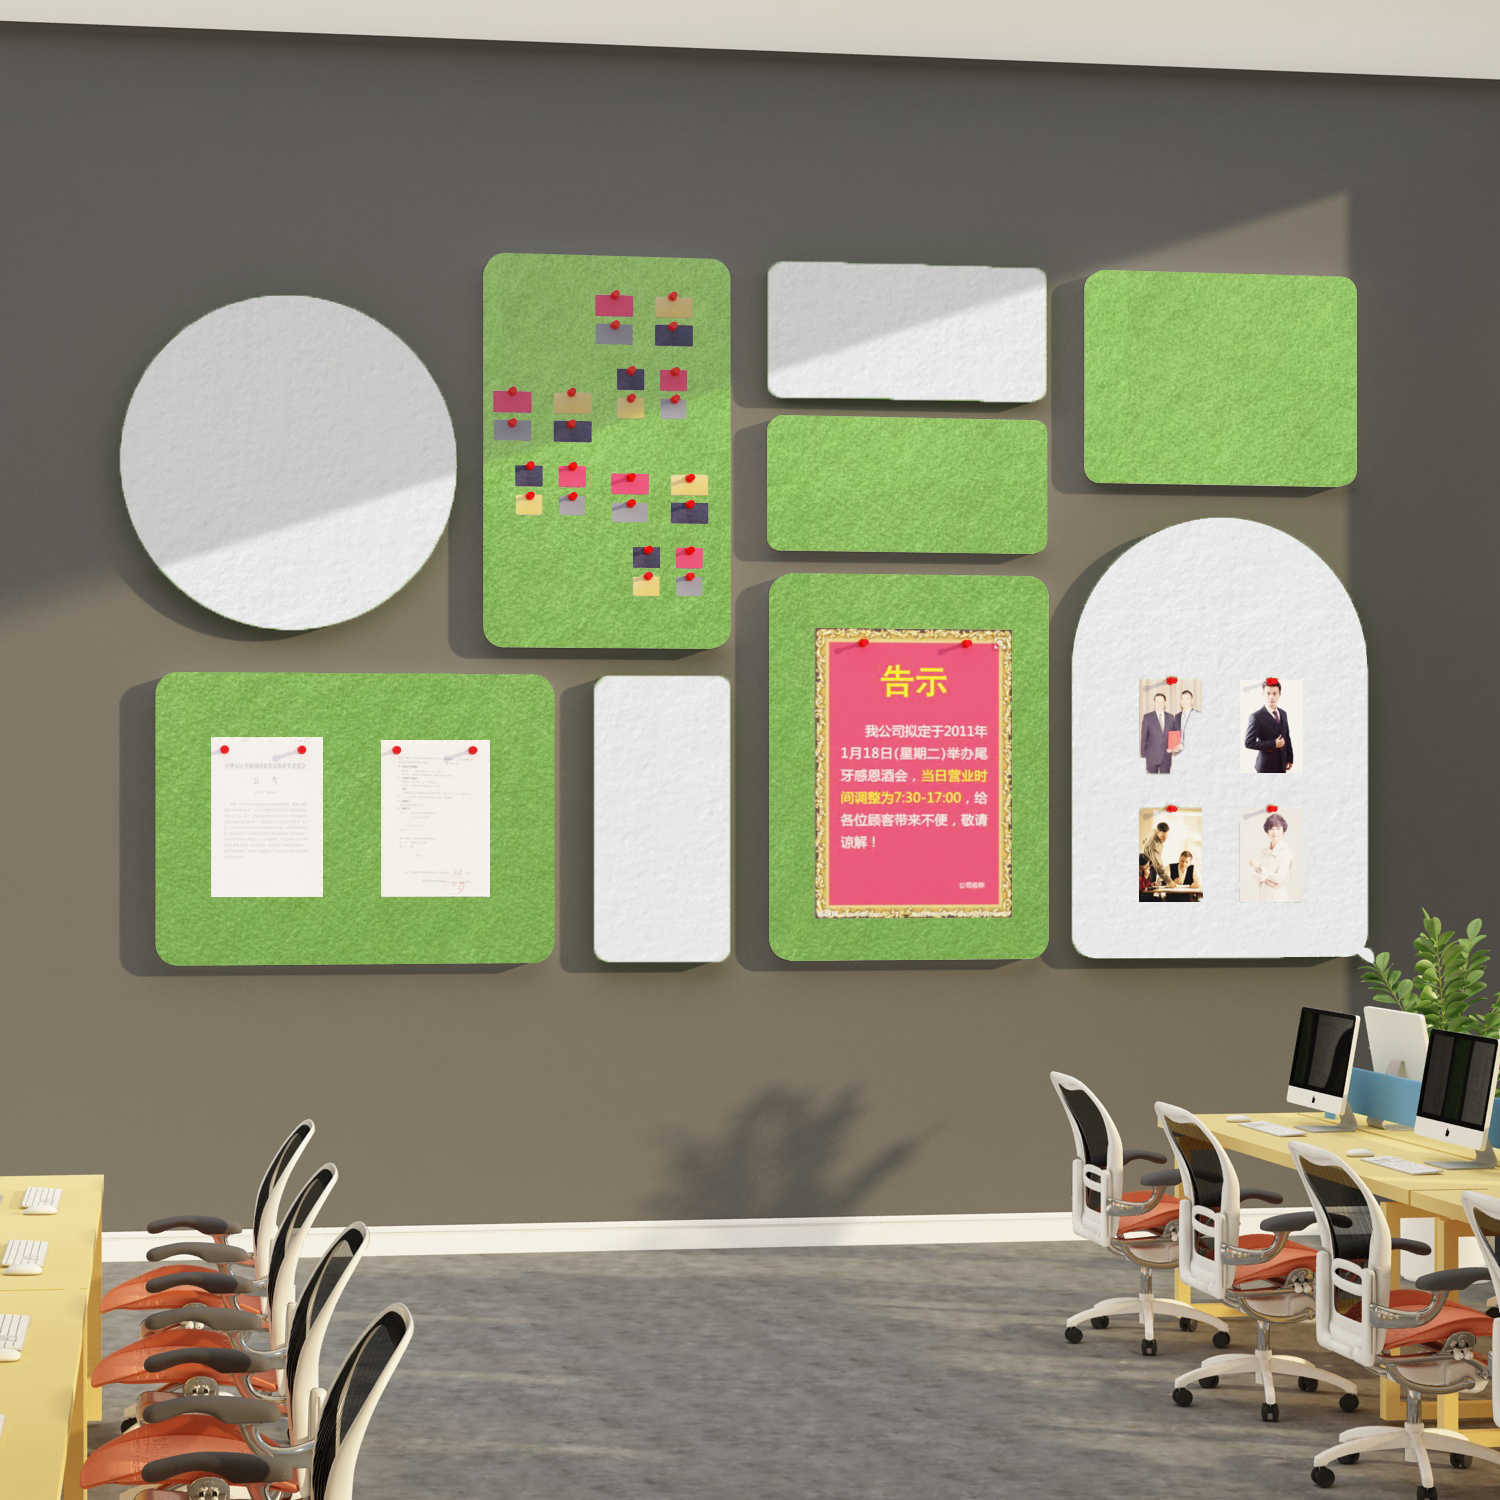 毛毡办公室墙面装饰公告栏布置公司企业文化墙氛围创意展示板墙贴